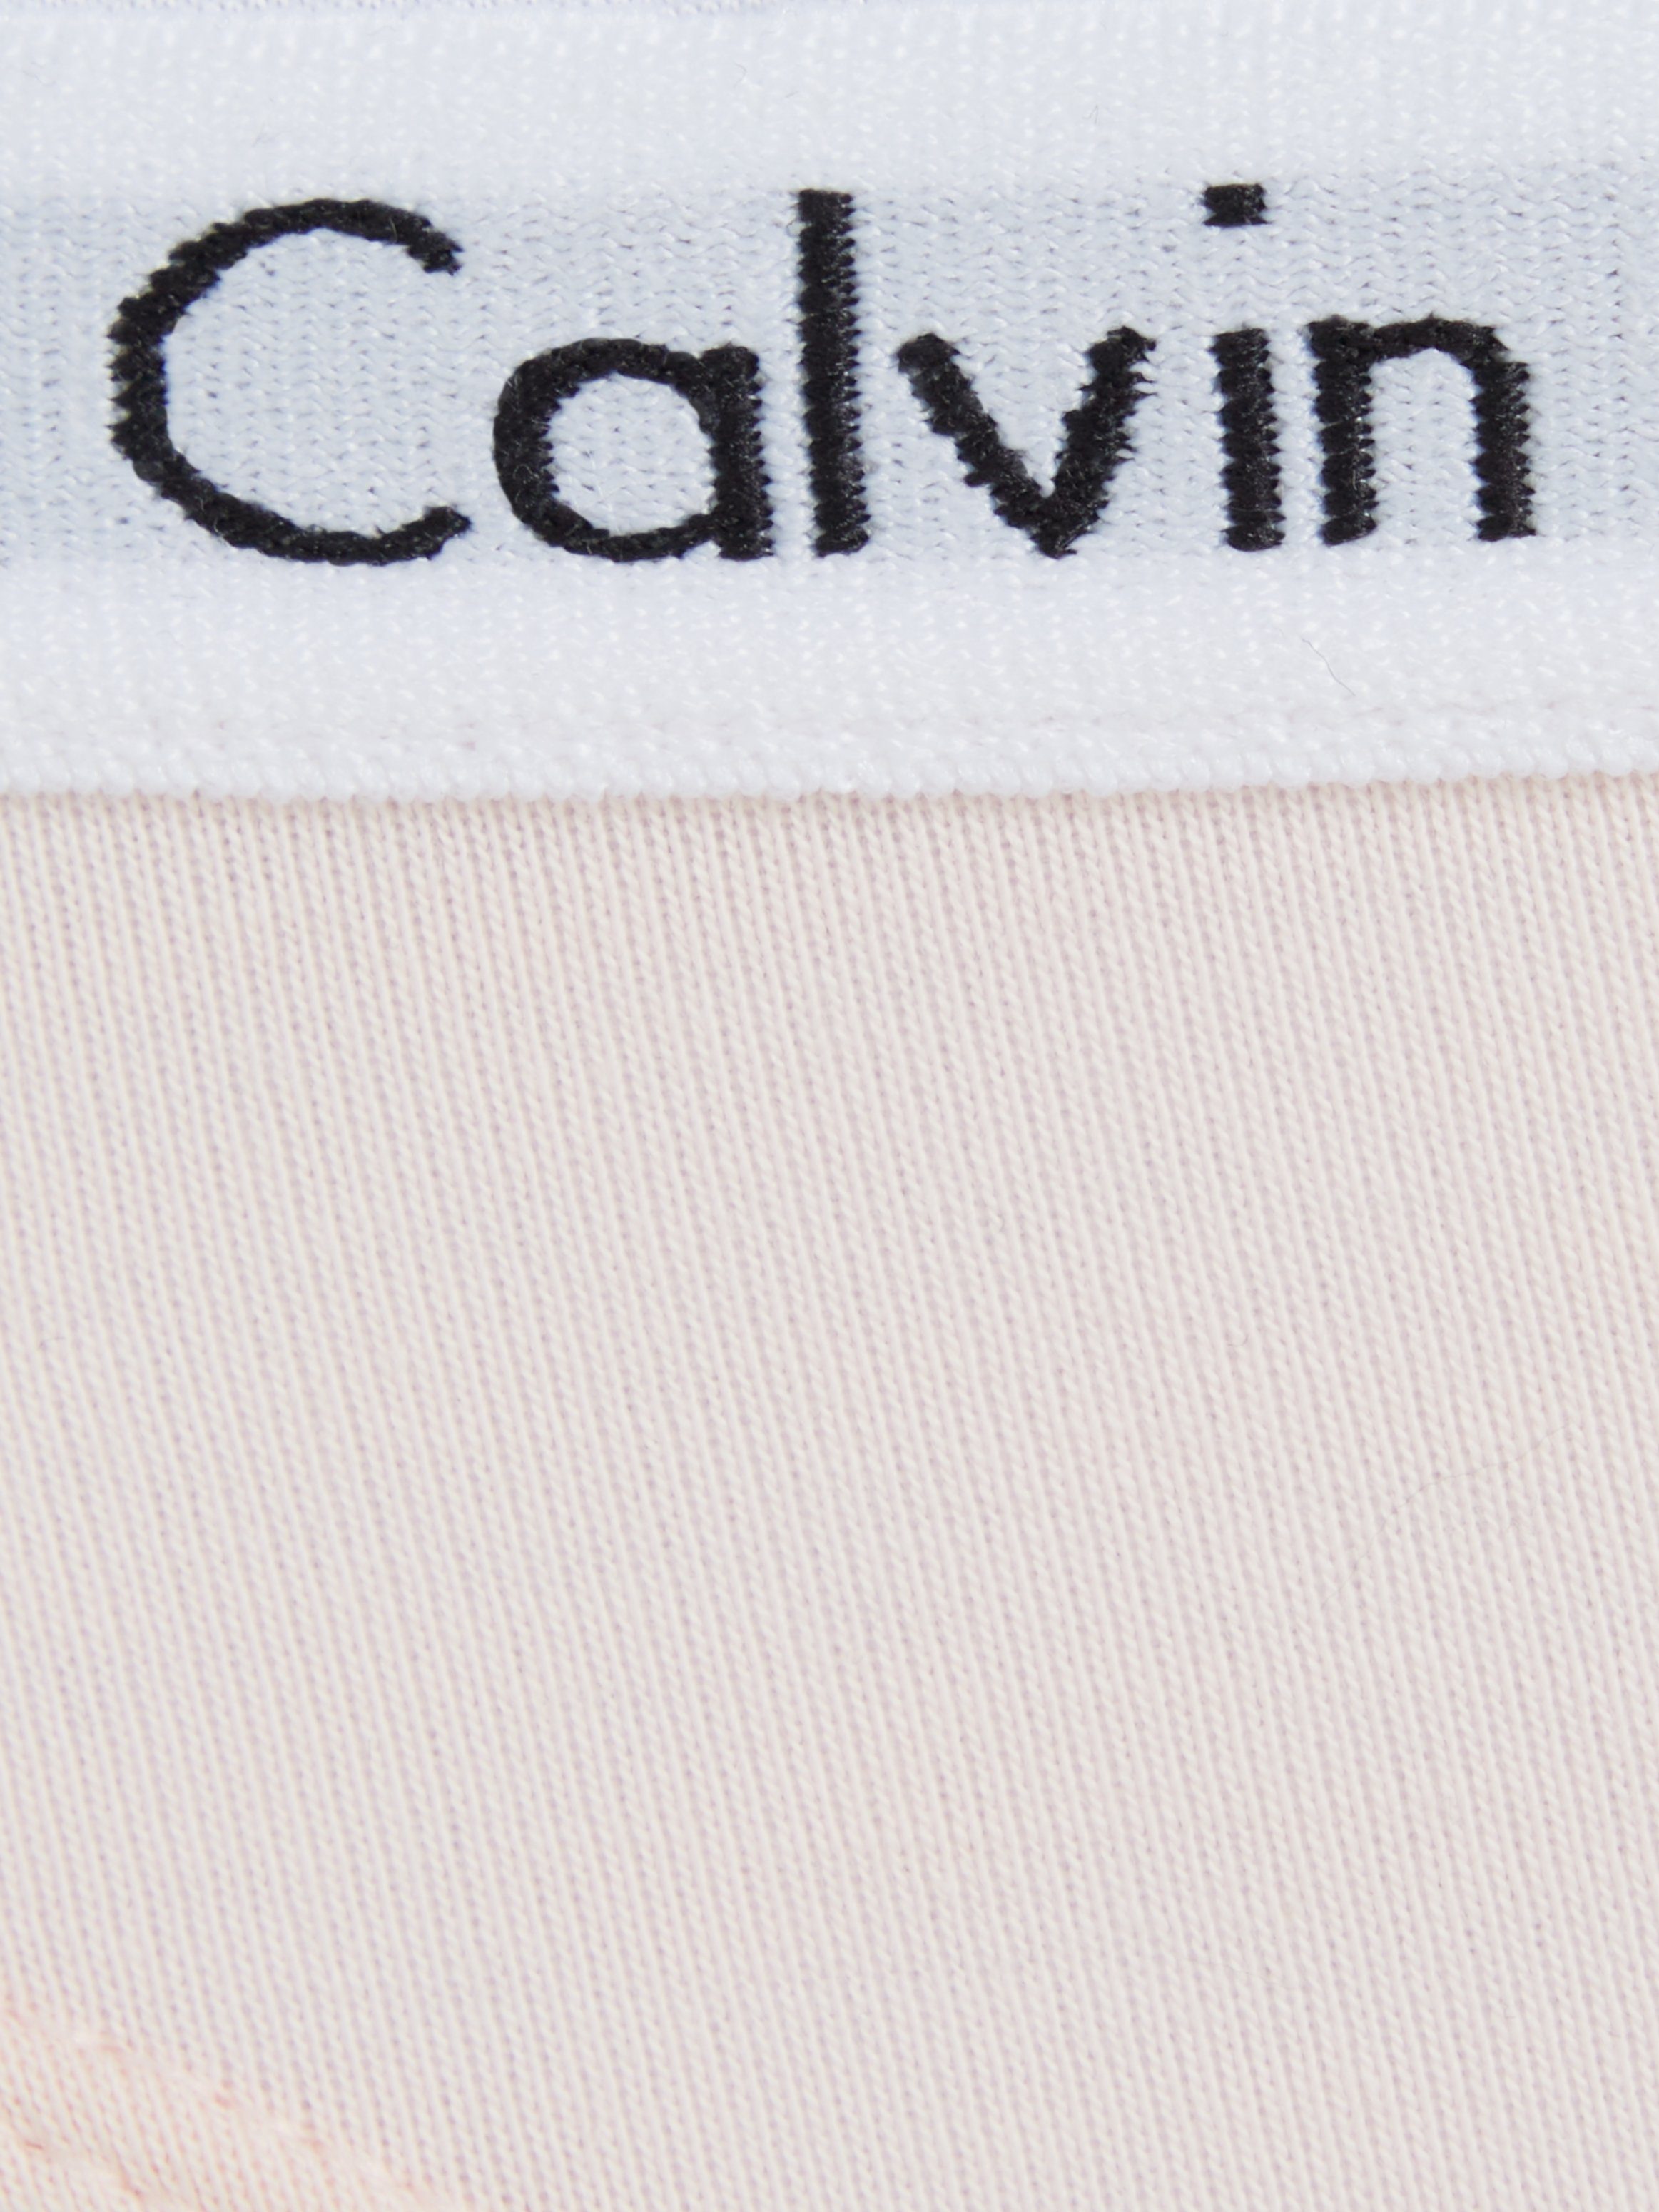 Calvin T-String Logobund rosa mit Klein Underwear